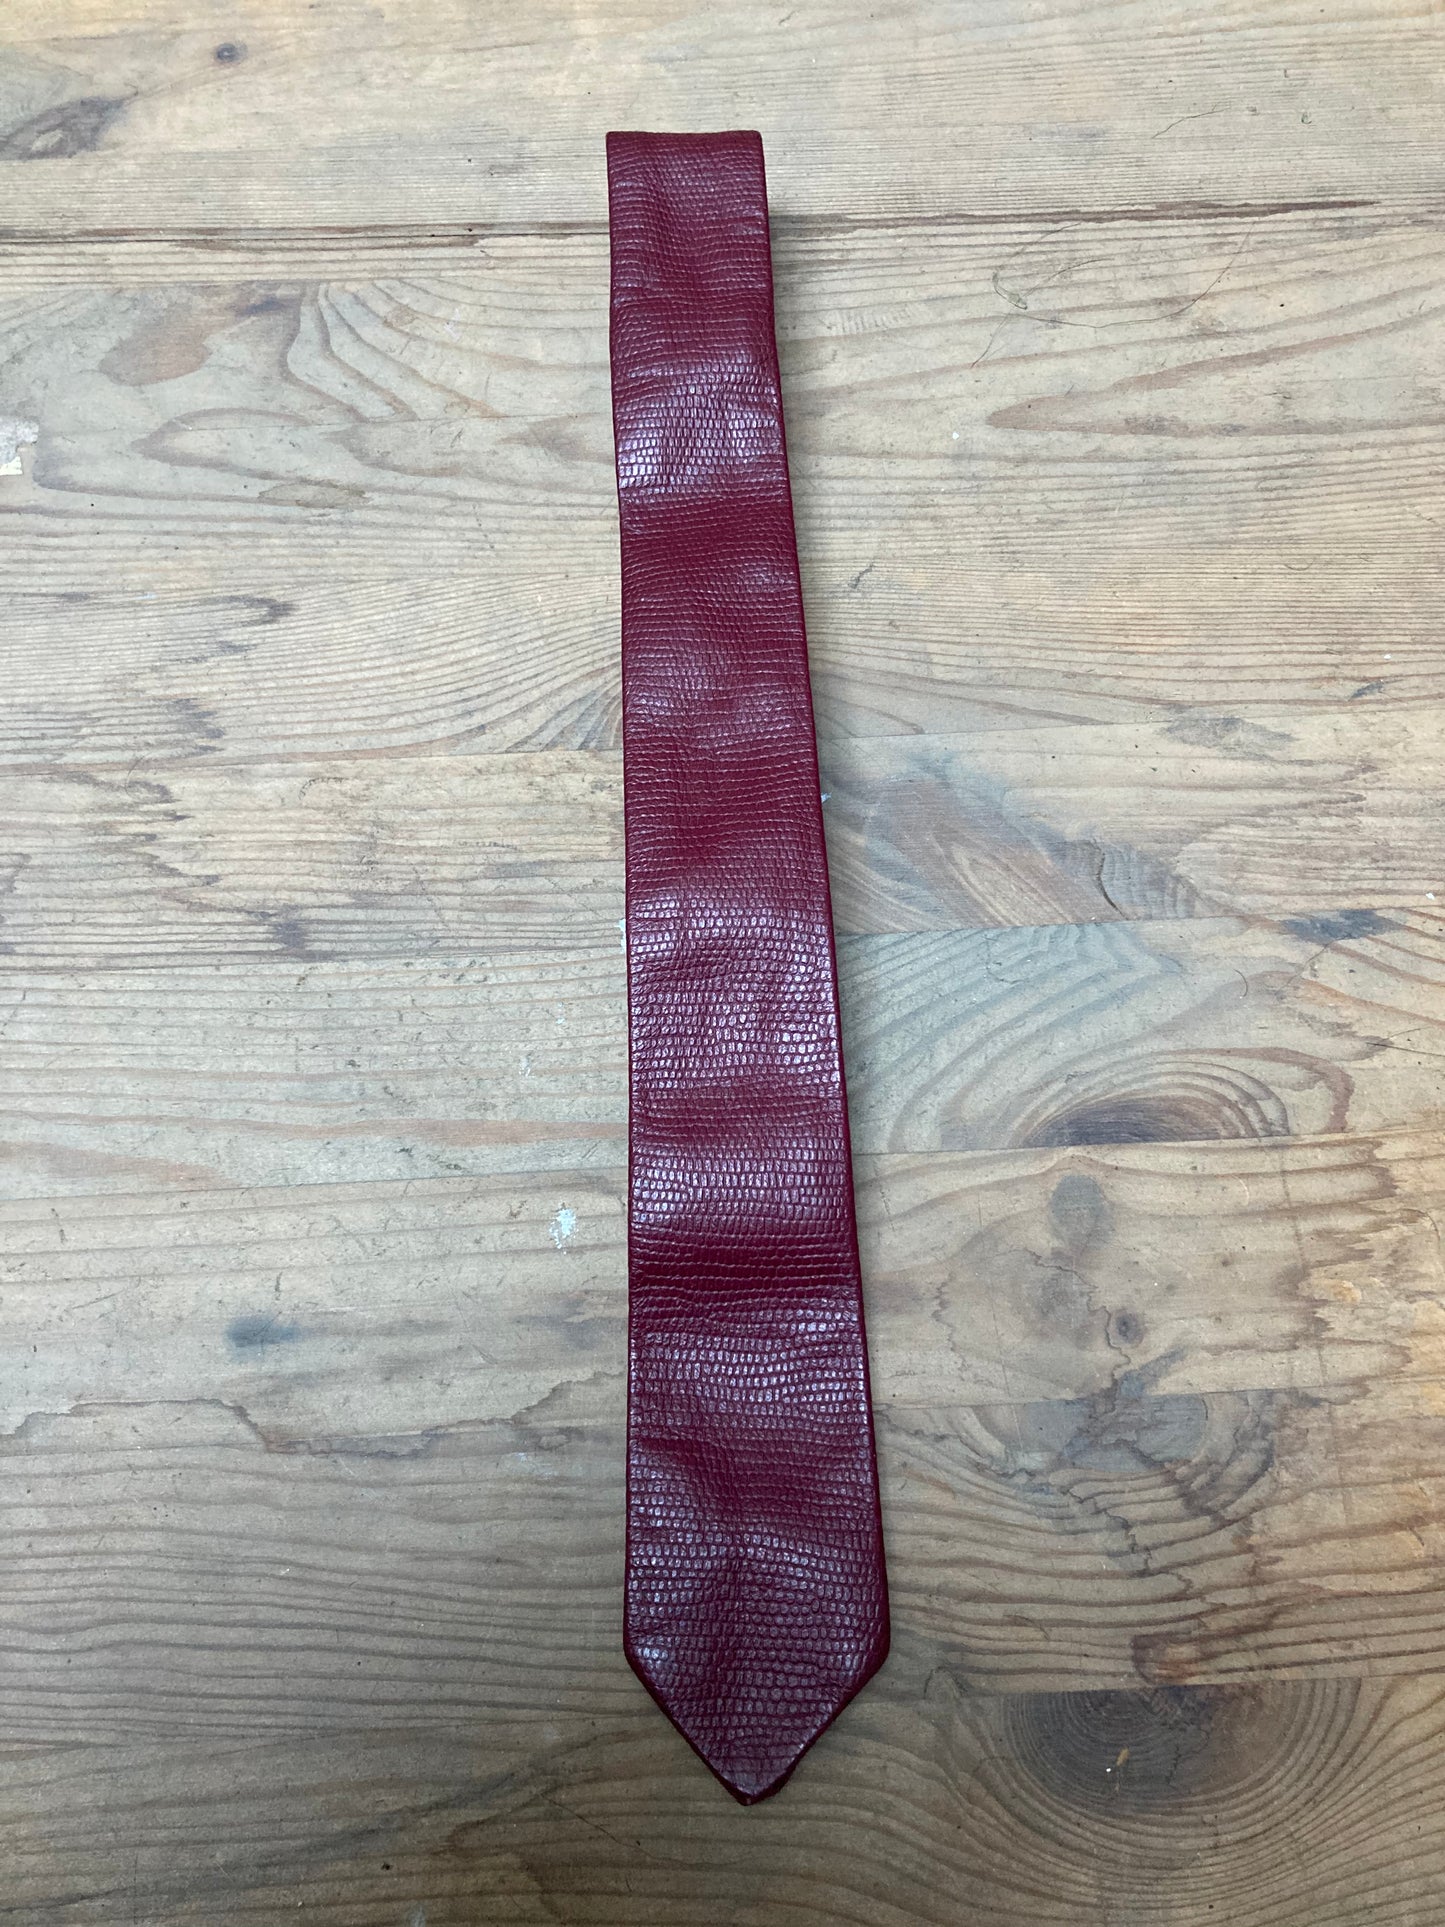 Cravate cuir 1970